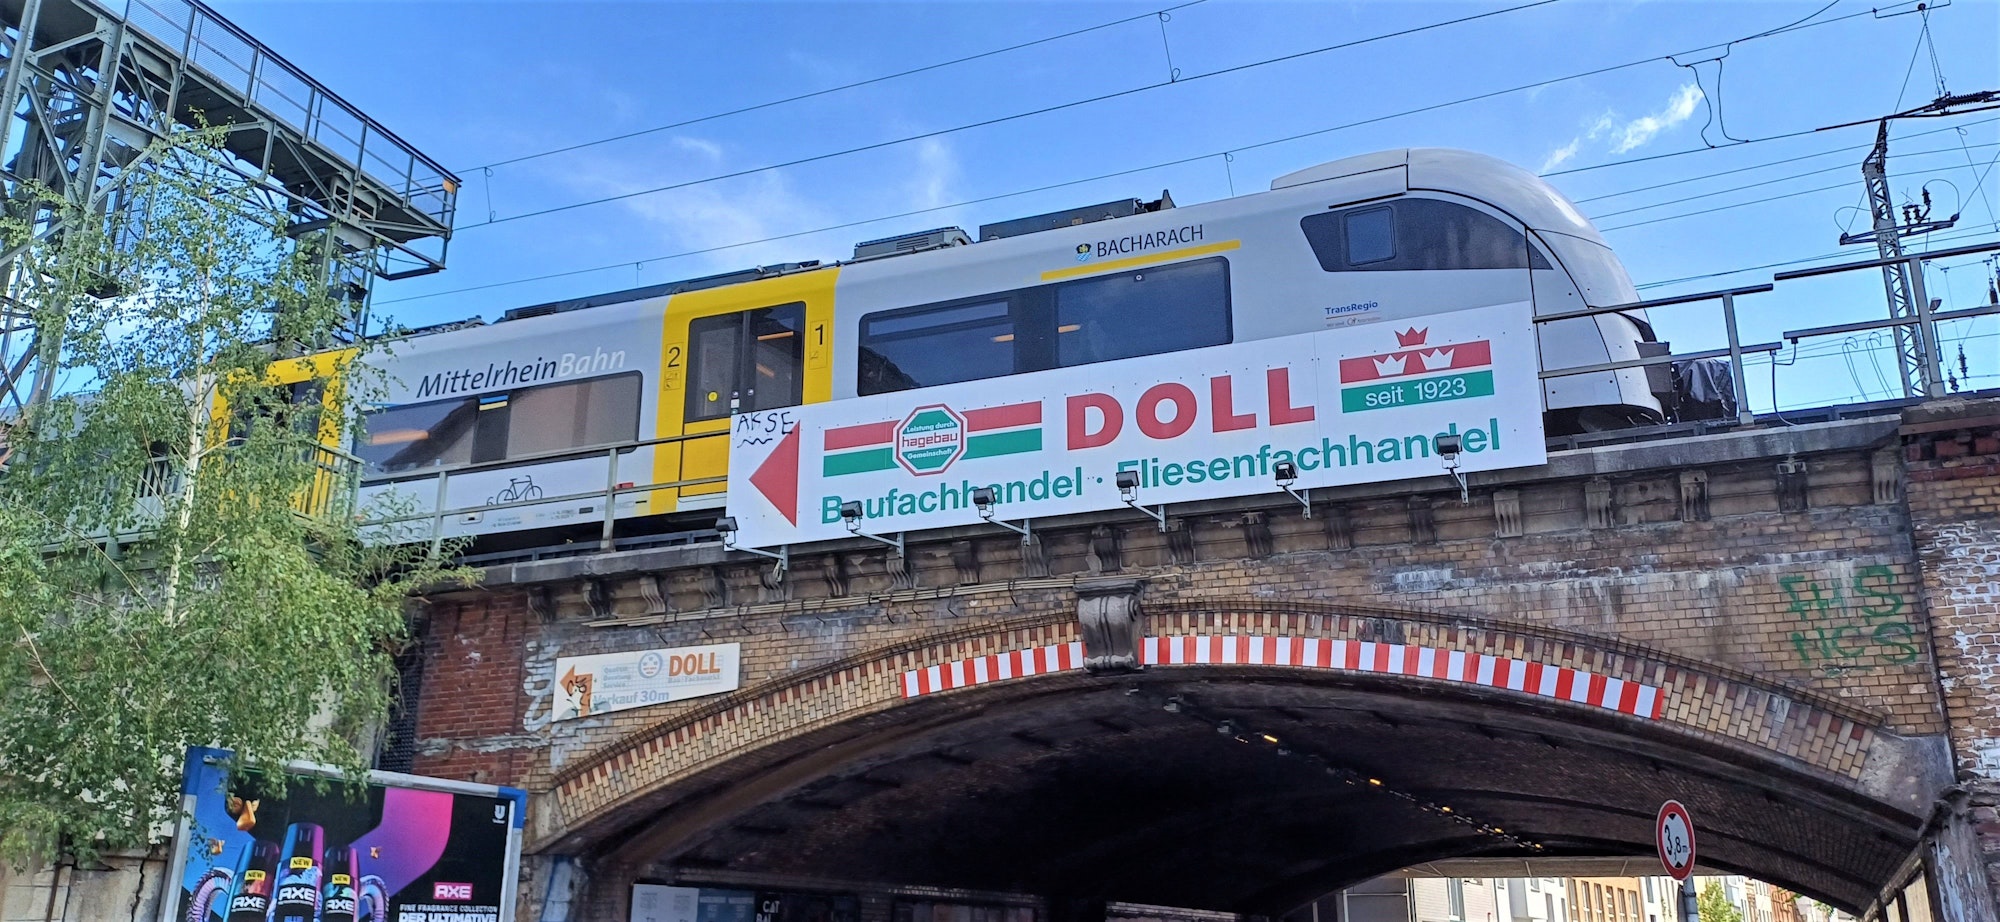 Ein Zug fährt über eine Unterführung mit einem Werbeschild der Firma Doll